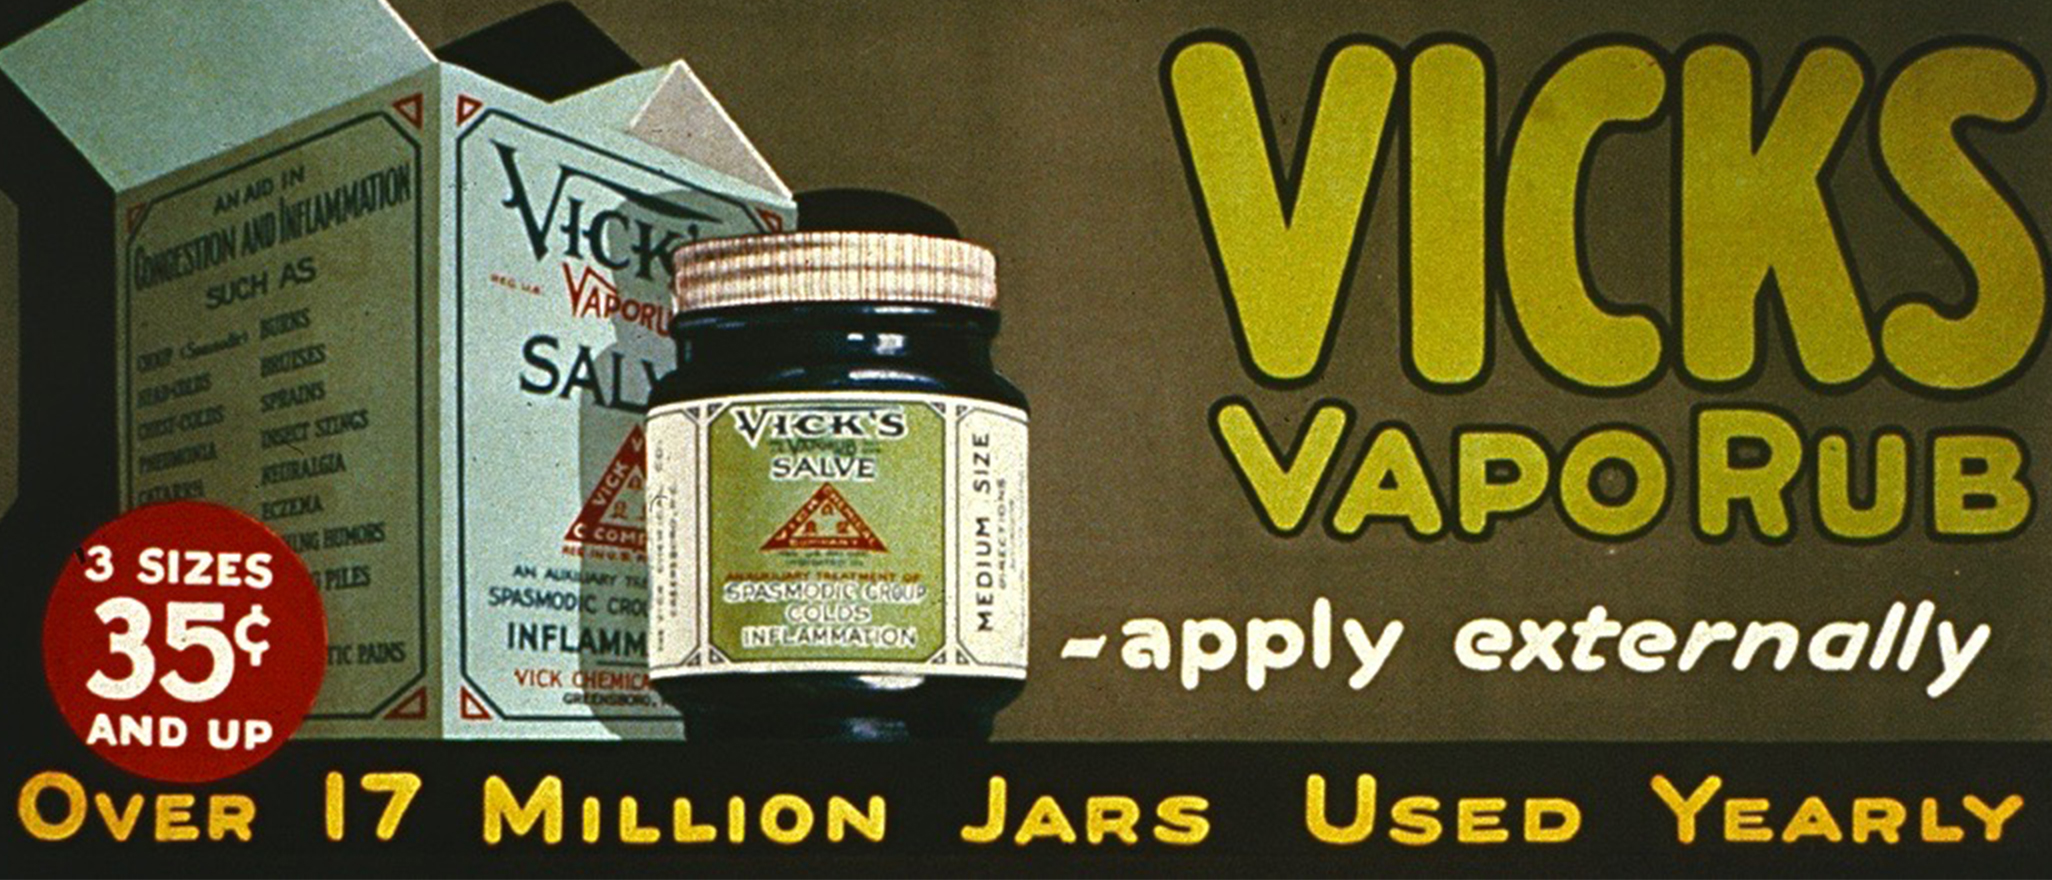 Should You Pay Less for Vicks VapoRub®?